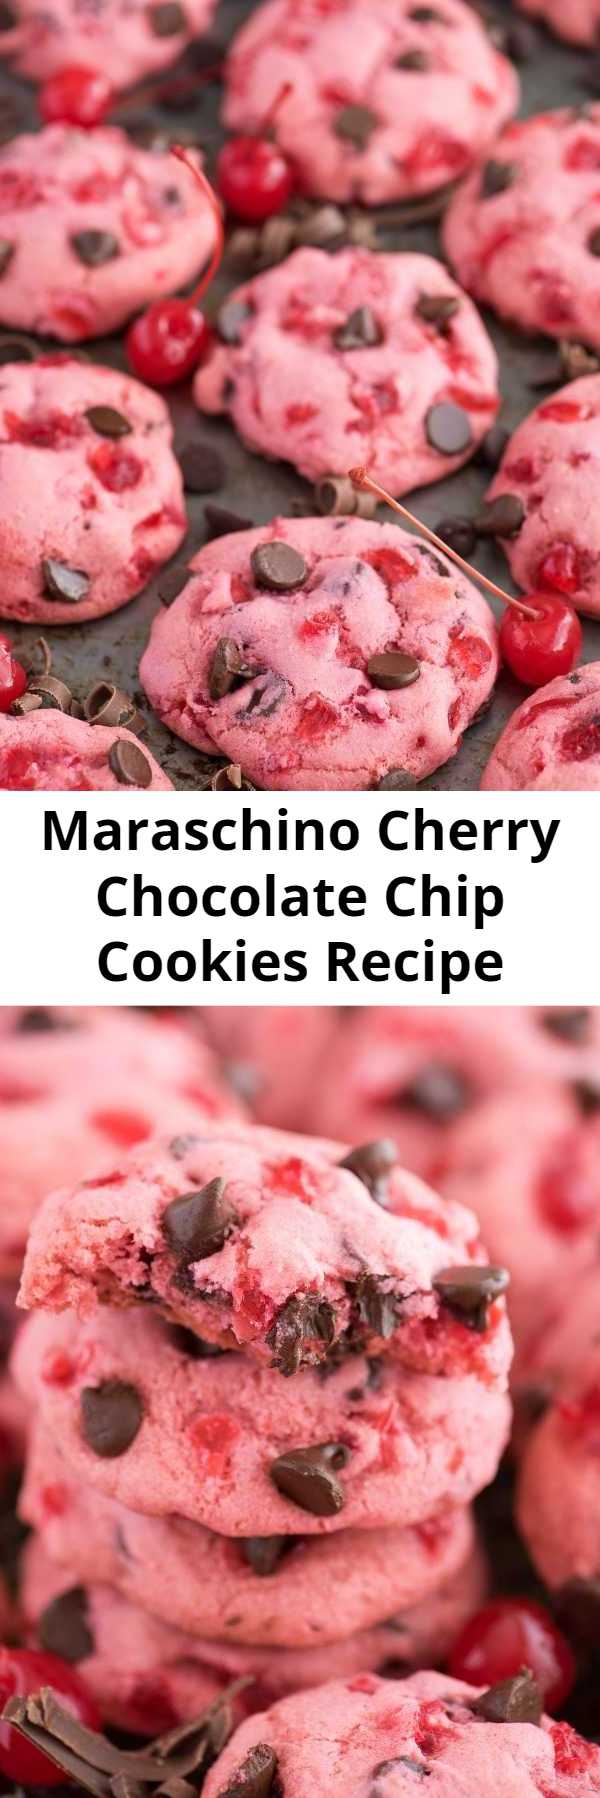 Maraschino Cherry Chocolate Chip Cookies Recipe - Thick & chewy maraschino cherry chocolate chip cookie recipe! Candied cherry cookie recipe. #cherrycookies #maraschinocherrycookies #cookies #cherrychocolatechipcookies